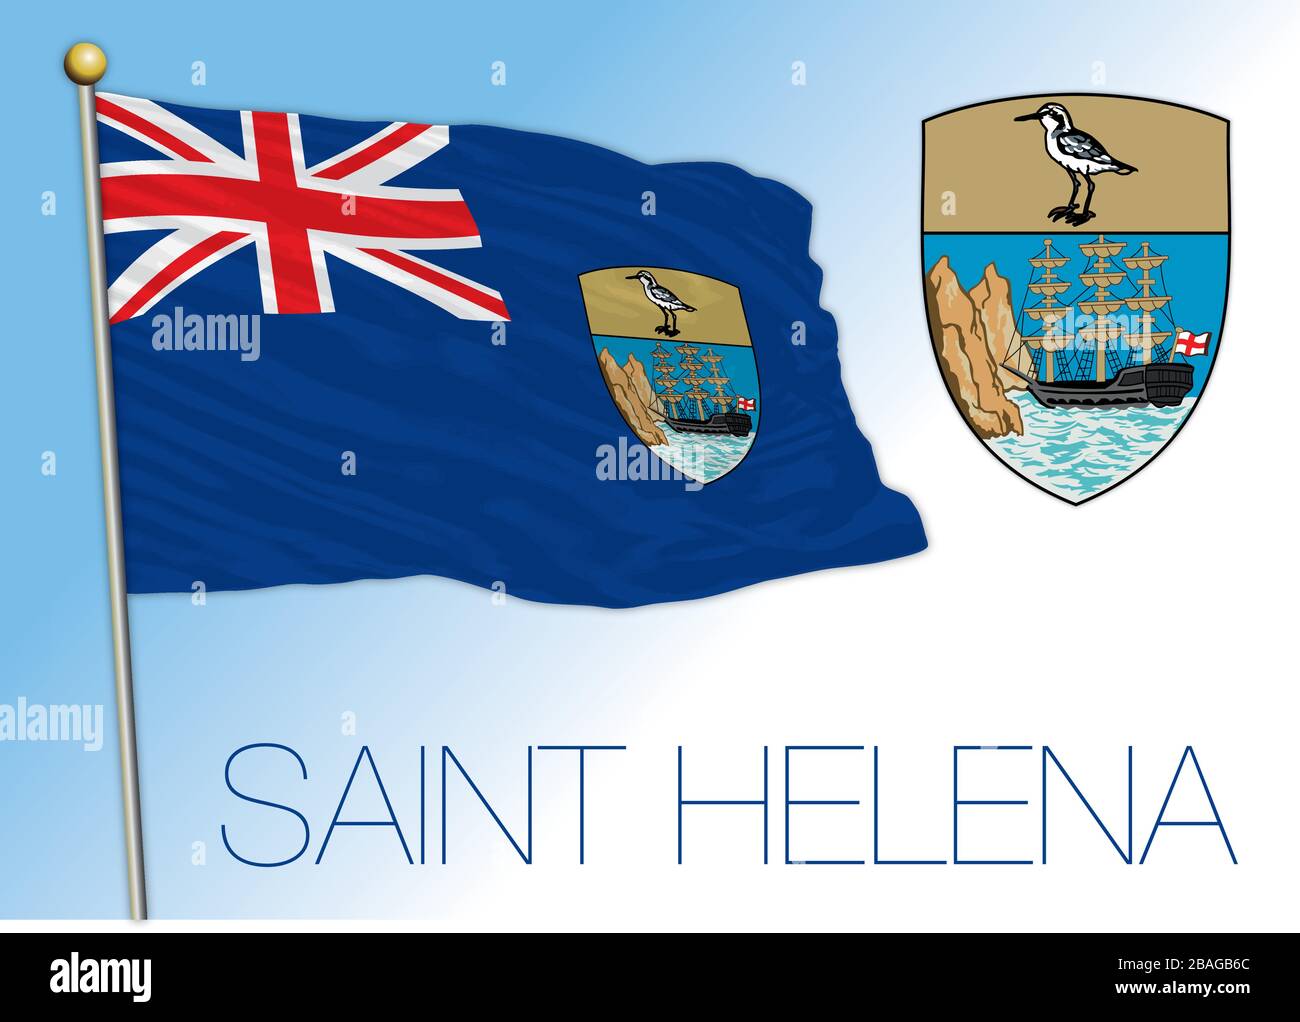 Offizielle Flagge und Wappen der heiligen Helena, Großbritannien, Vektorillustrierung Stock Vektor